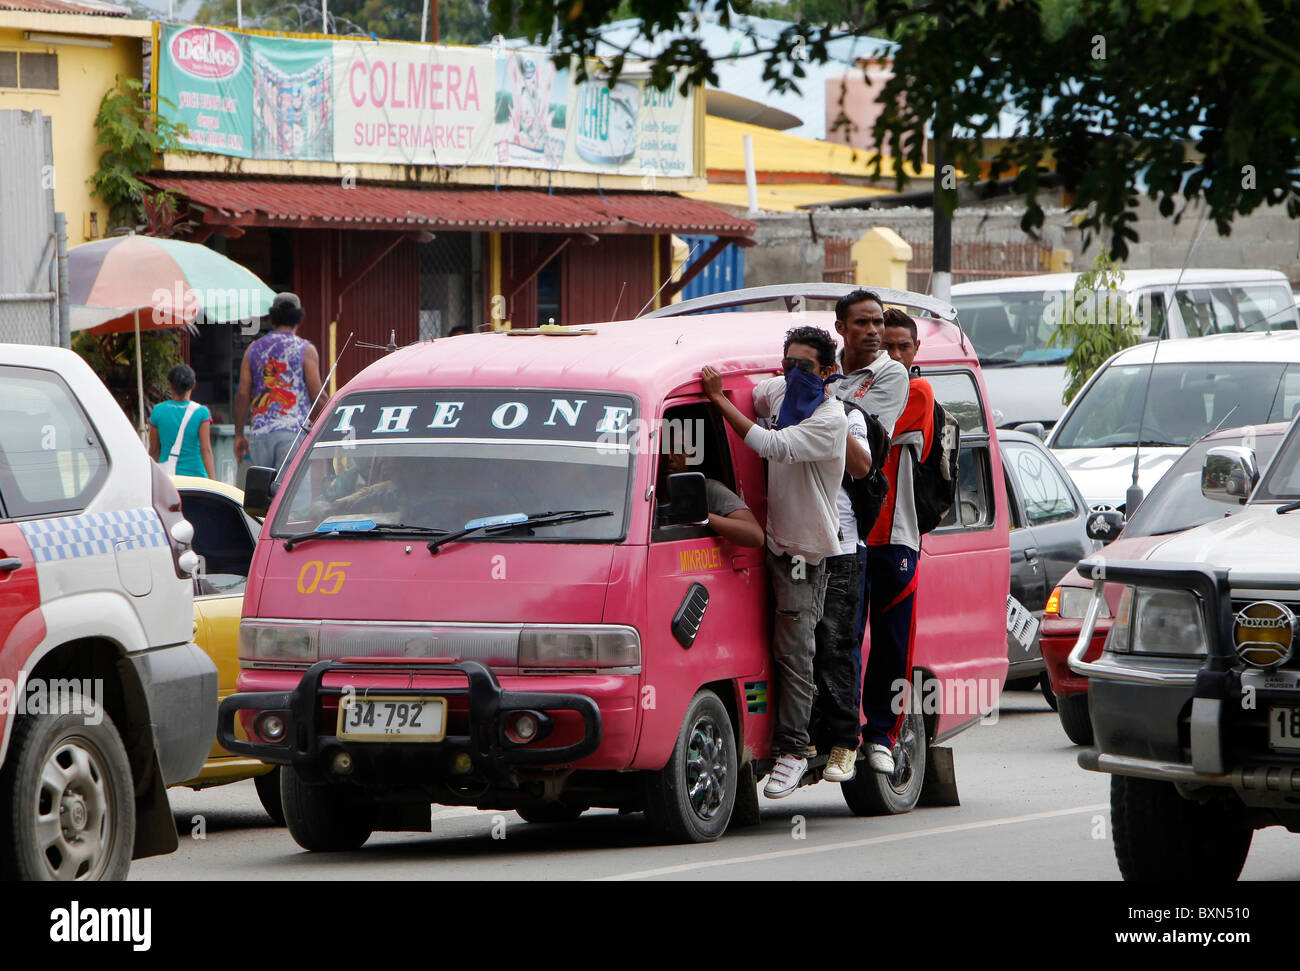 Un Mikrolet (minibus) les transports publics à Dili, capitale du Timor Leste (Timor oriental) Banque D'Images